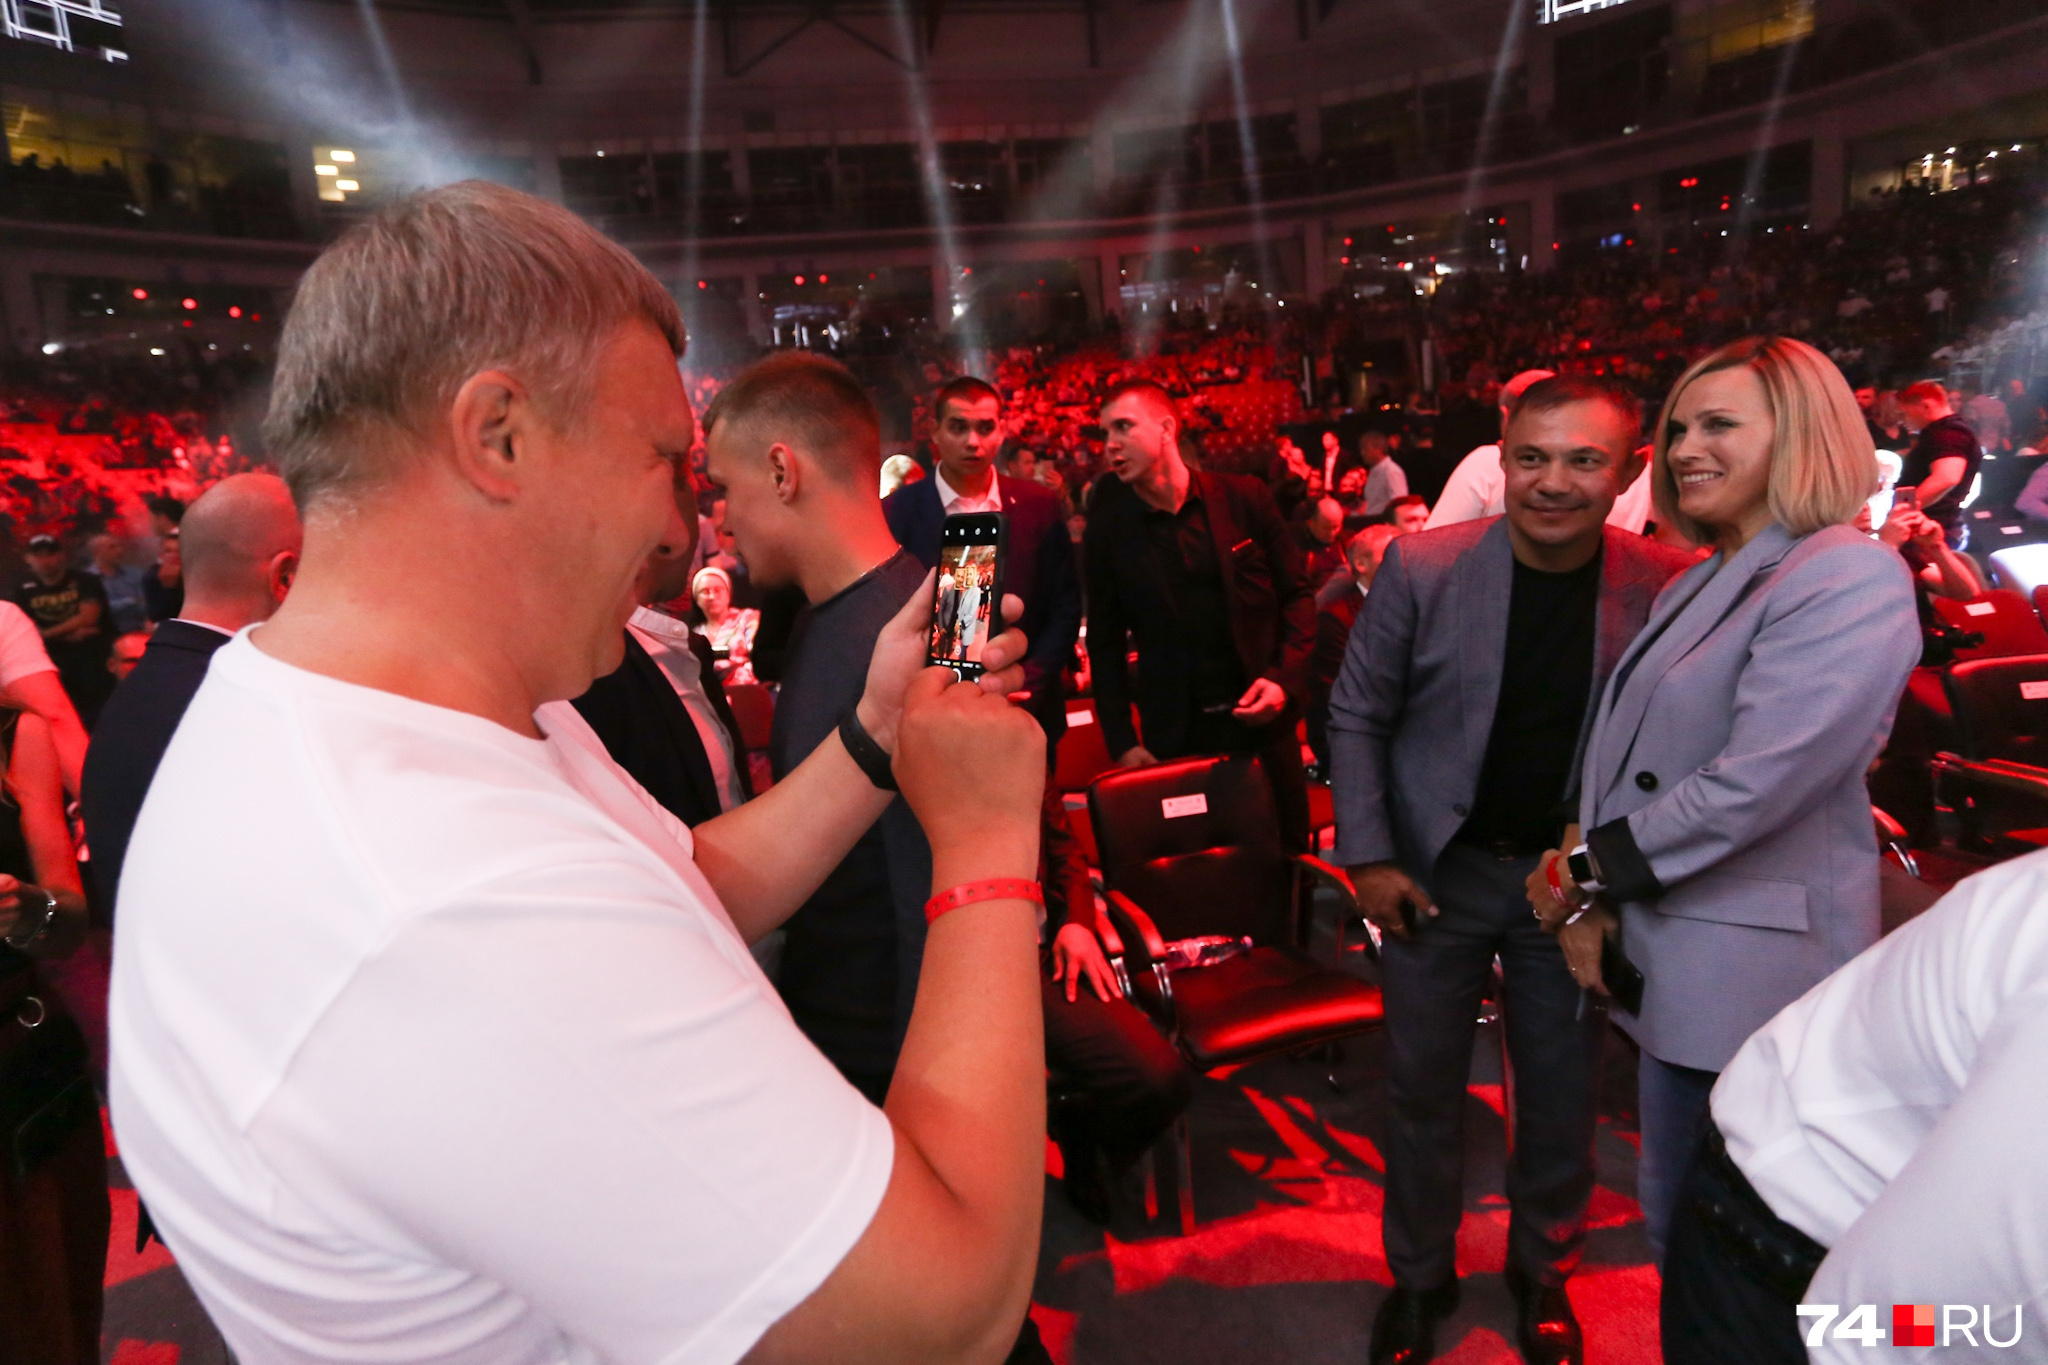 Начальник регионального управления СК Денис Чернятьев не упустил возможность сфотографировать жену с прославленным боксёром Костей Цзю